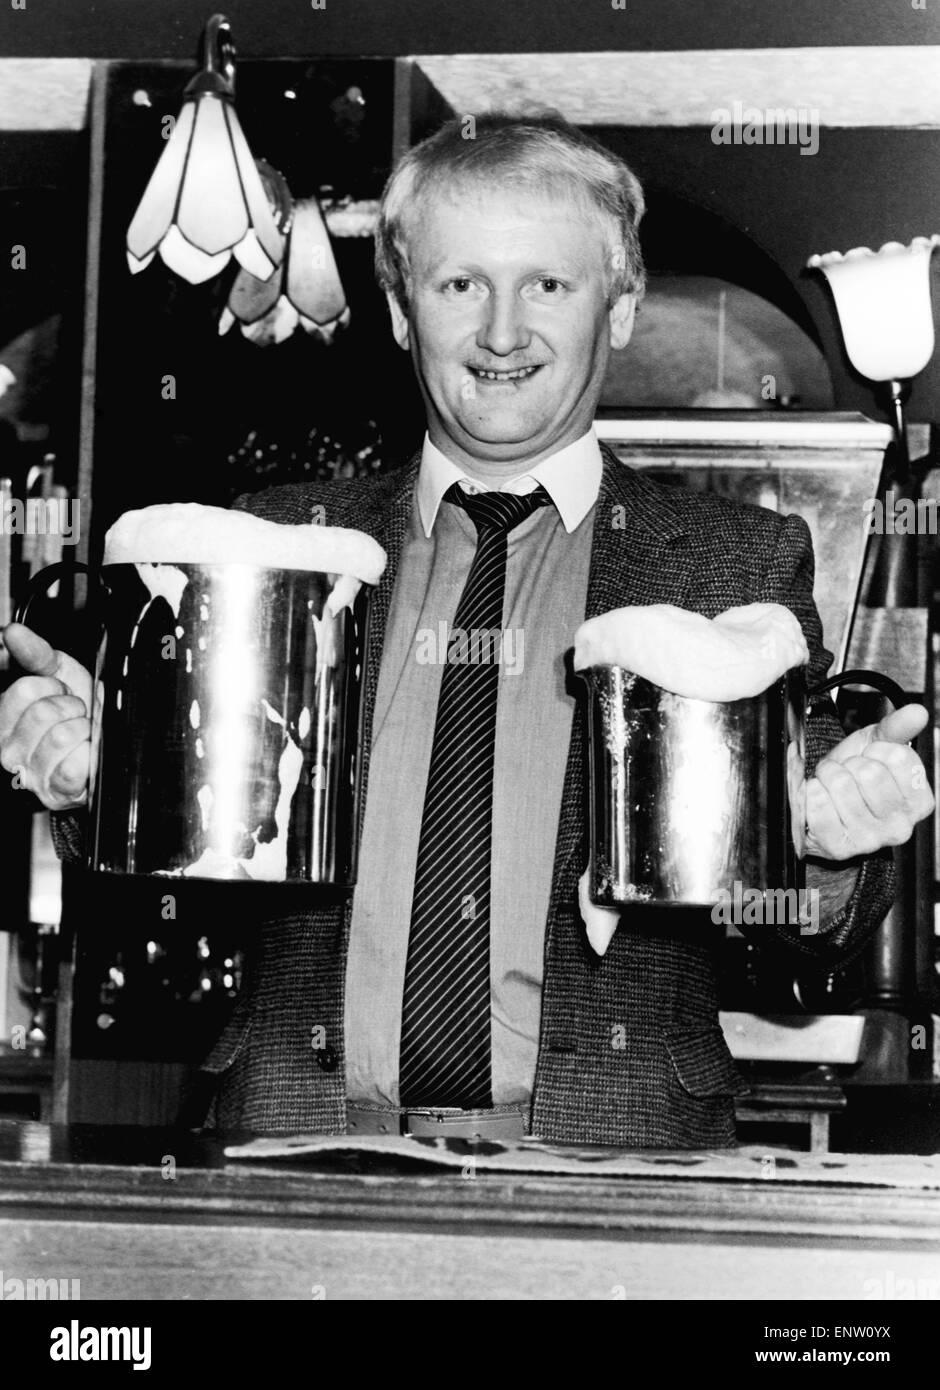 Aufruf an alle großen Trinker! Vermieter Ron Lambton dient sein Bier in Quart, eine Gallone Töpfe. Er kam auf die Idee anstehen an der Bar und verringern die Wäsche auf. Großeinkauf bietet seinen Kunden einen billigeren Abend zu - "Ich kaum Pints überhaupt verkaufen jetzt", sagte er. 26. Februar 1985 Stockfoto